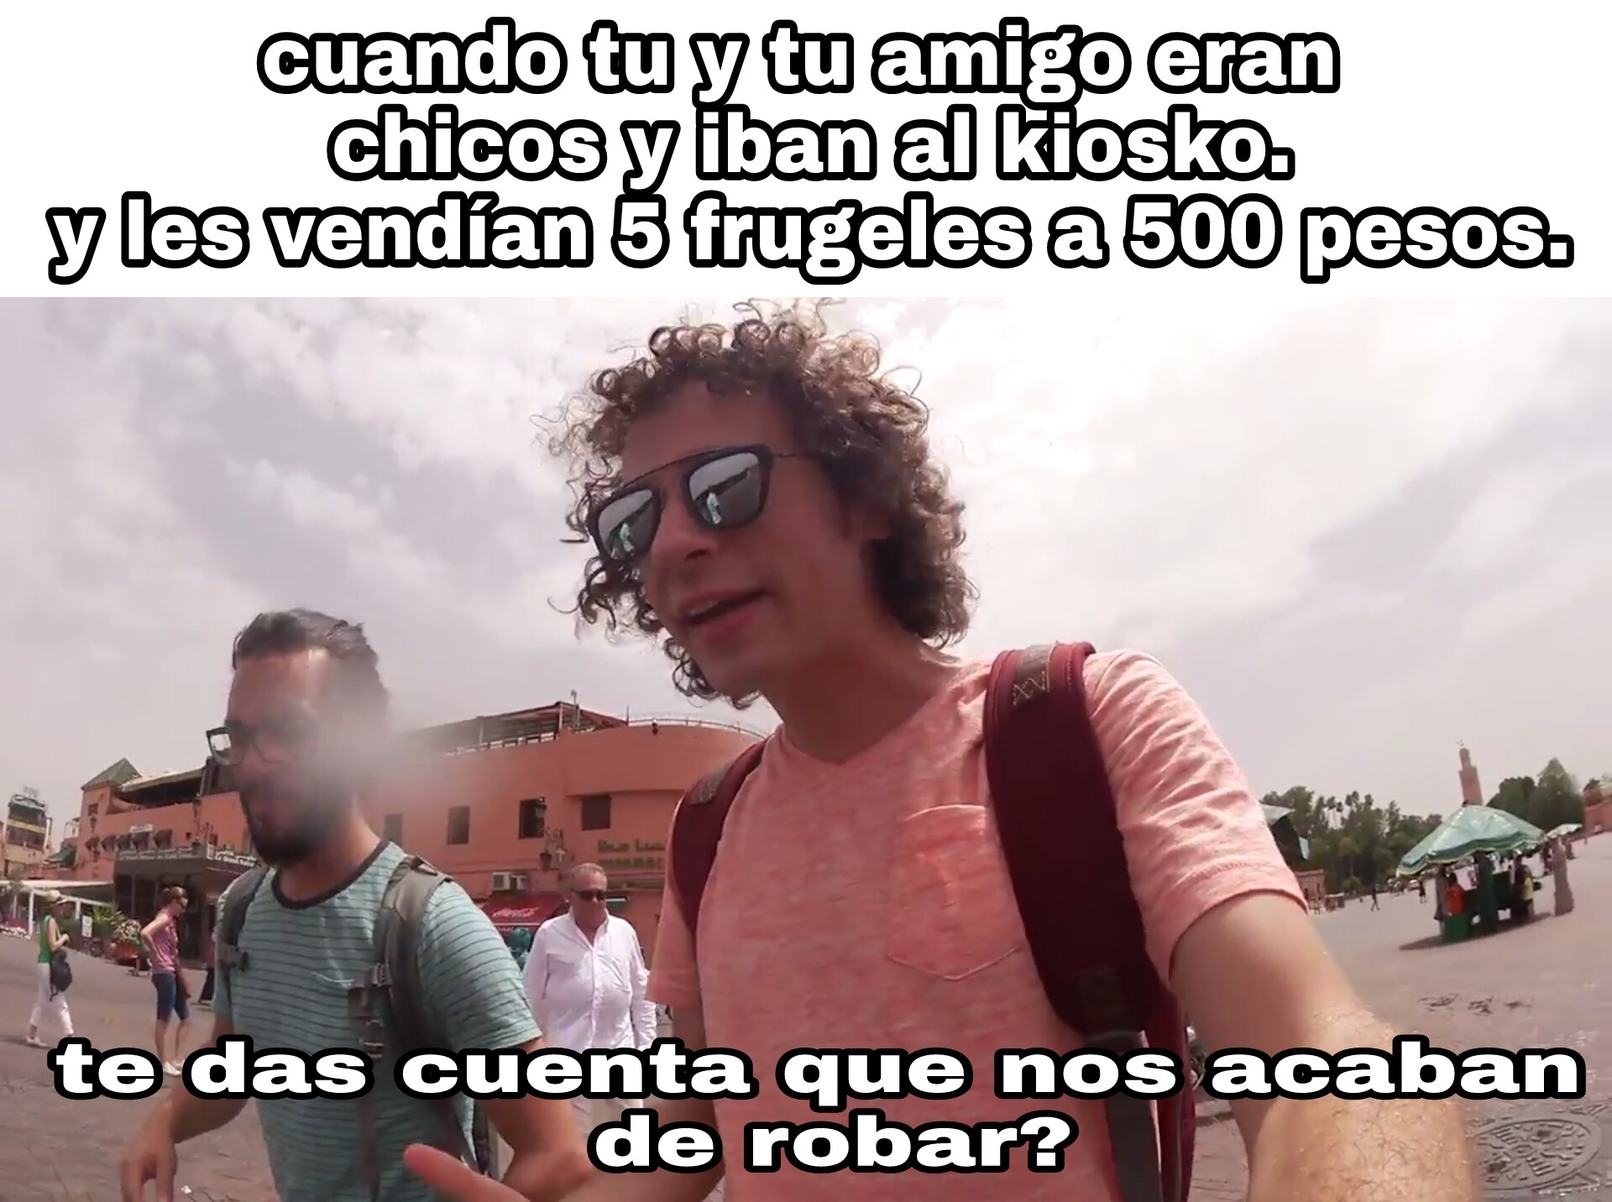 500 pesos chilenos por si acaso y nueva plantilla - meme